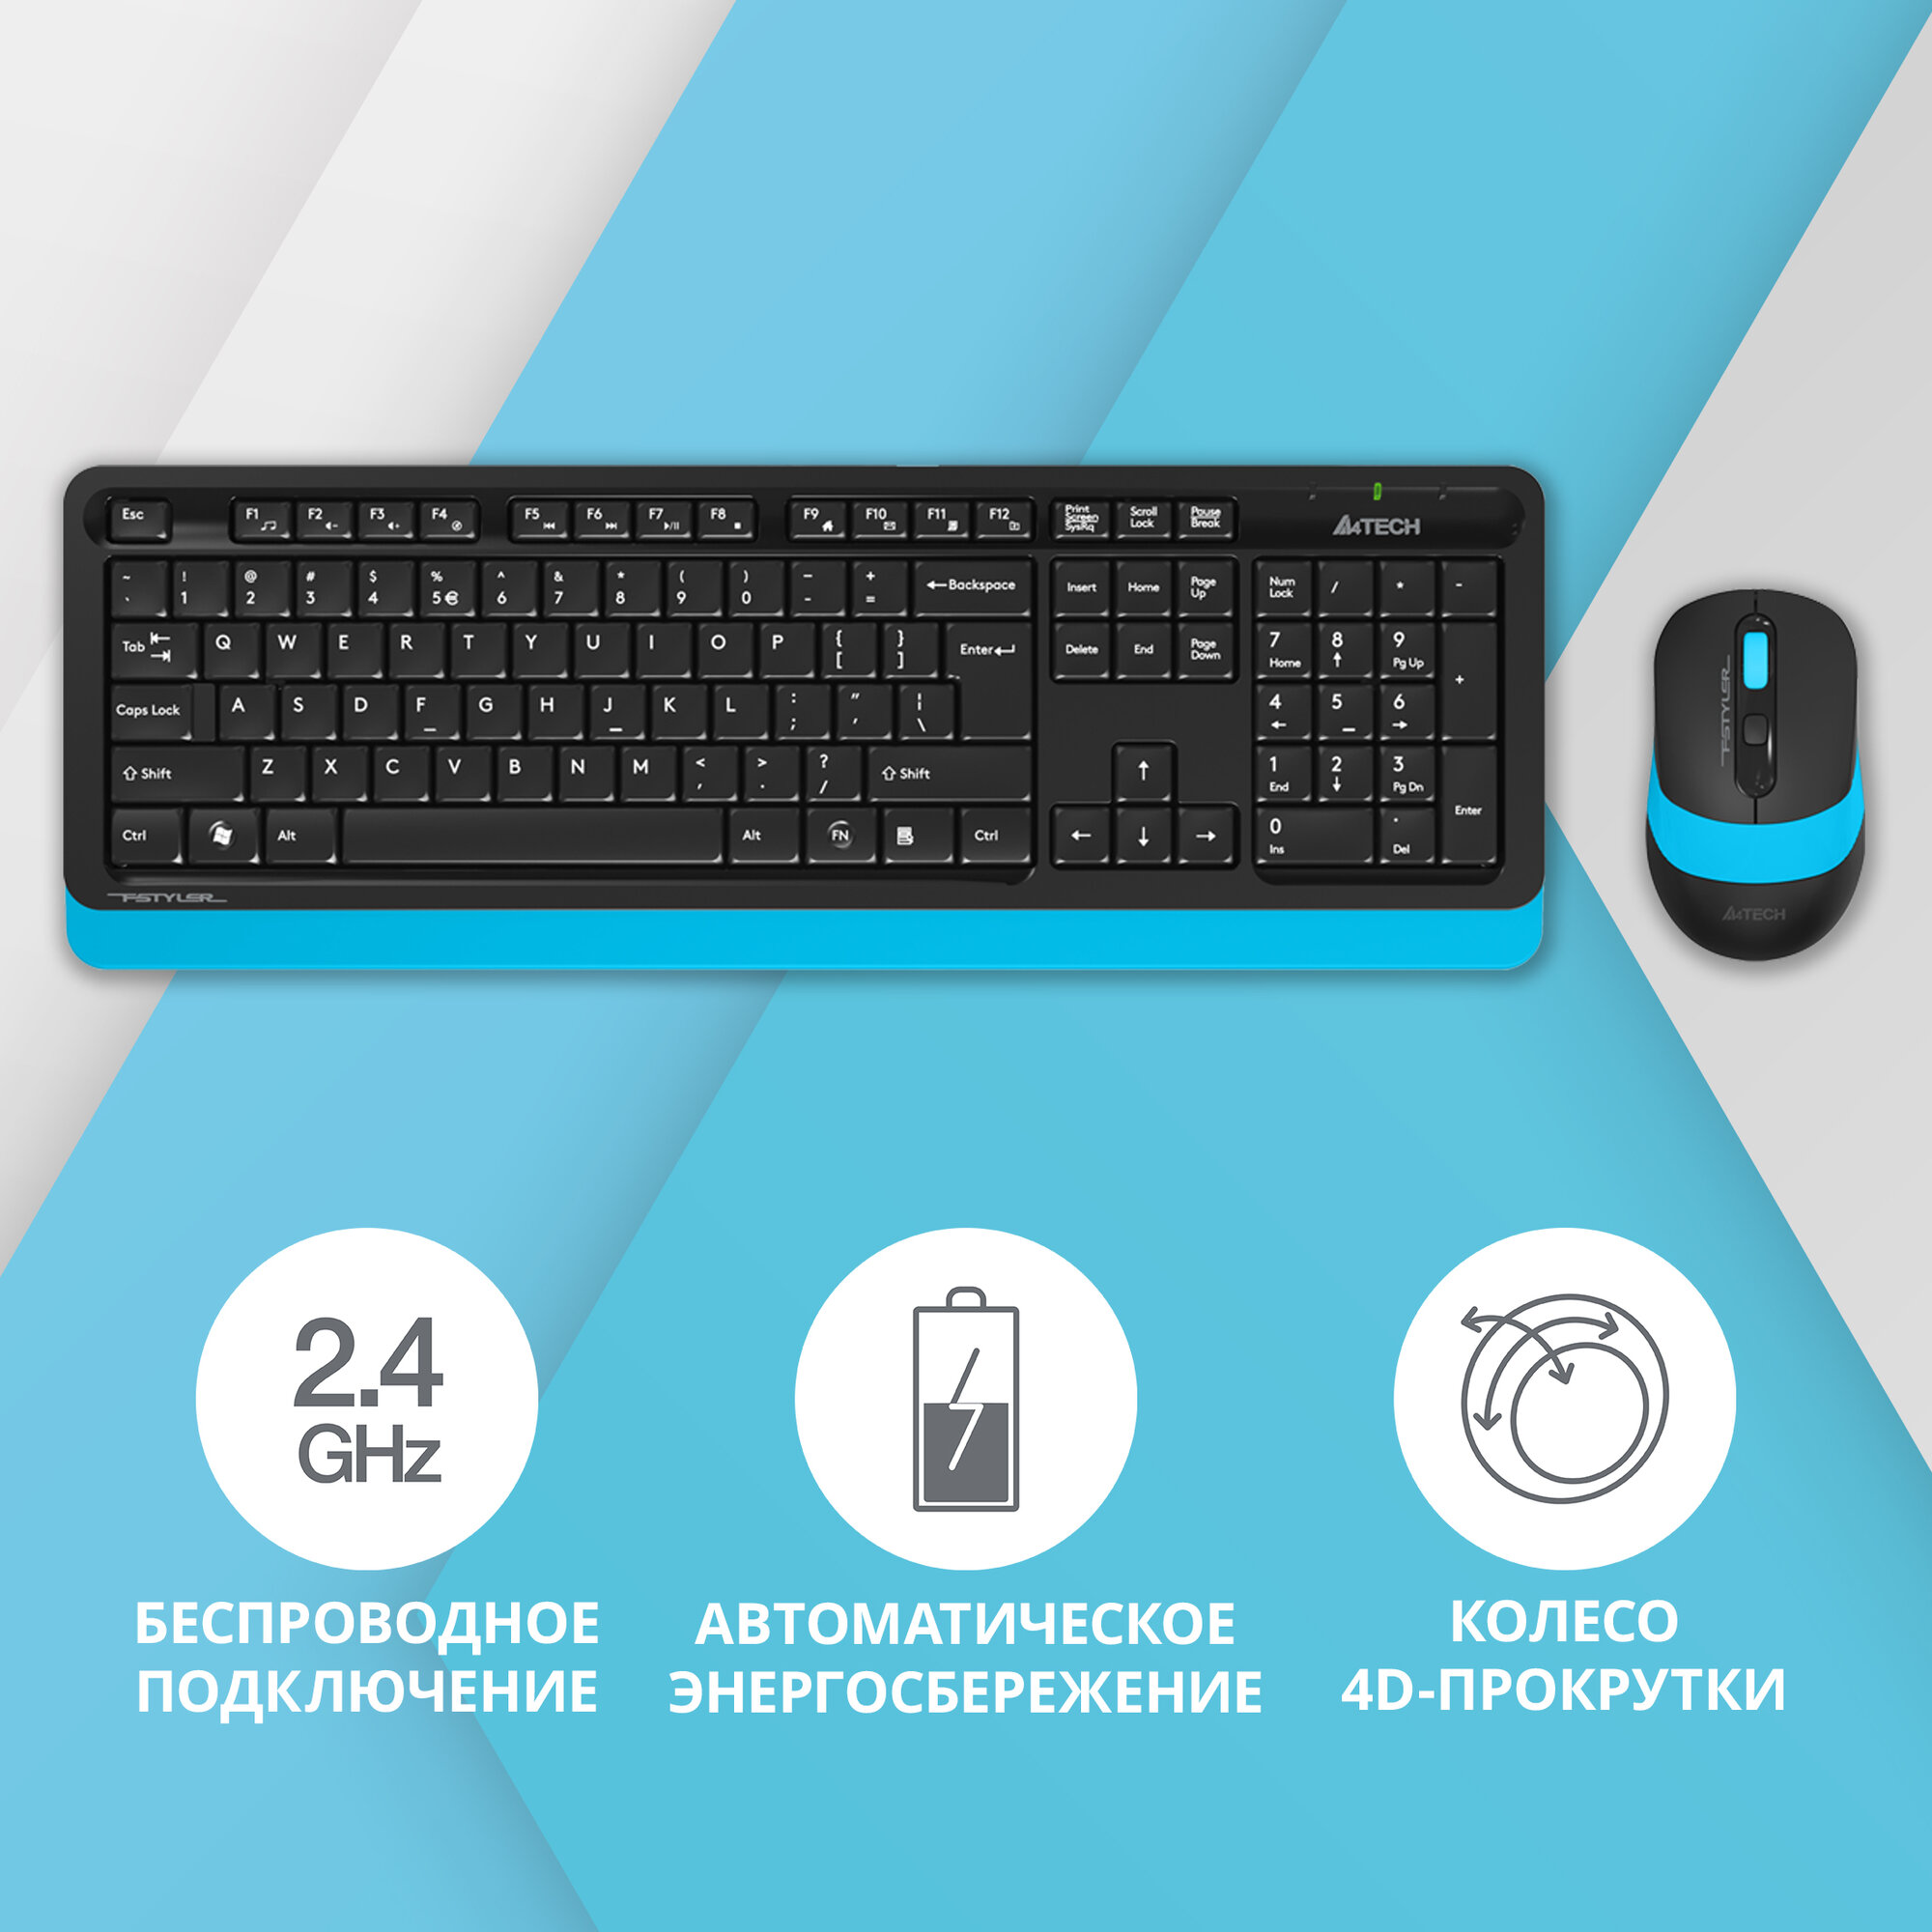 Клавиатура + мышь A4 Fstyler FG1010 клав: черный/синий мышь: черный/синий USB беспроводная Multimedia